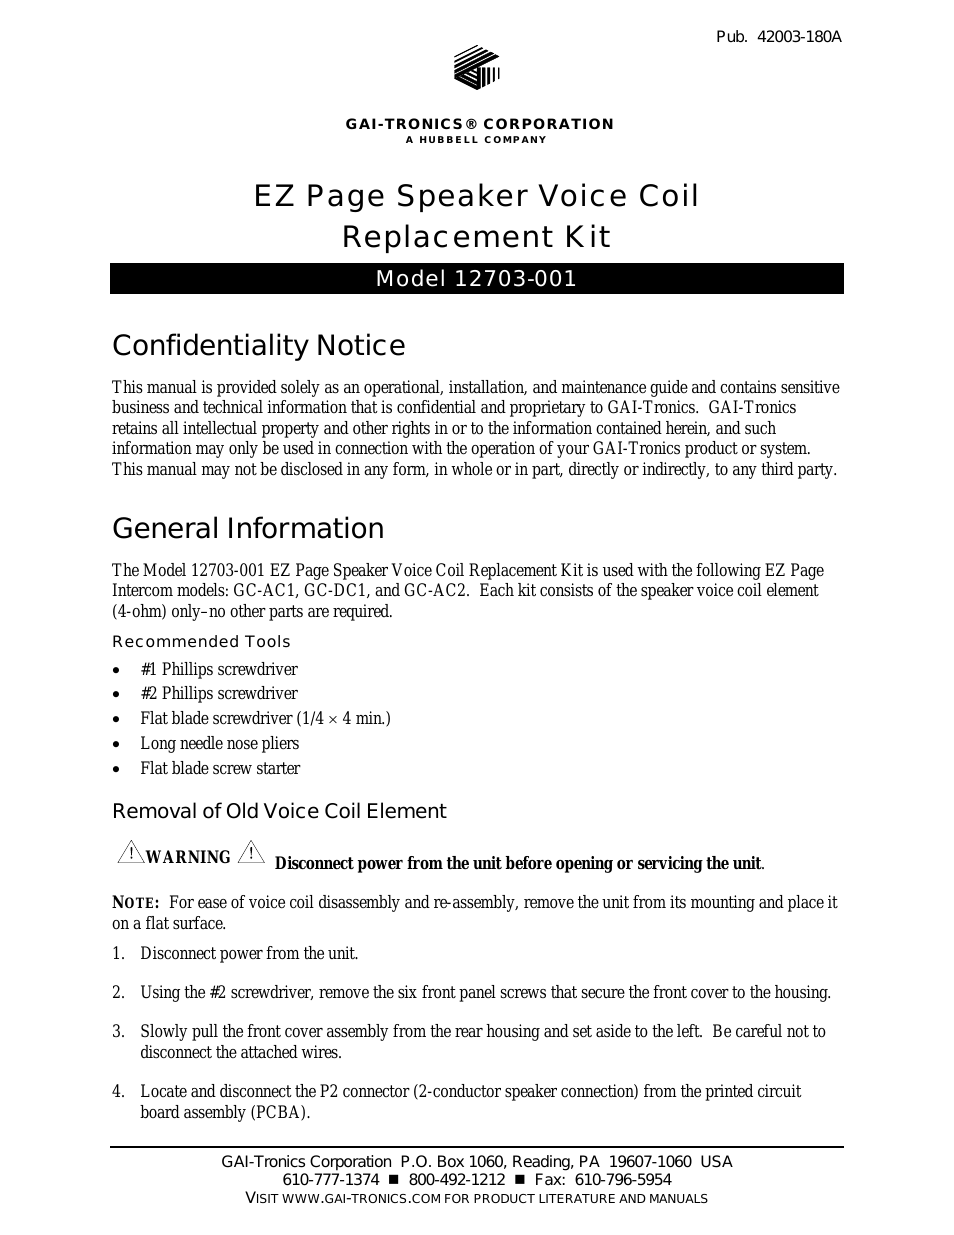 12703-001 EZ Page Speaker Voice Coil Kit